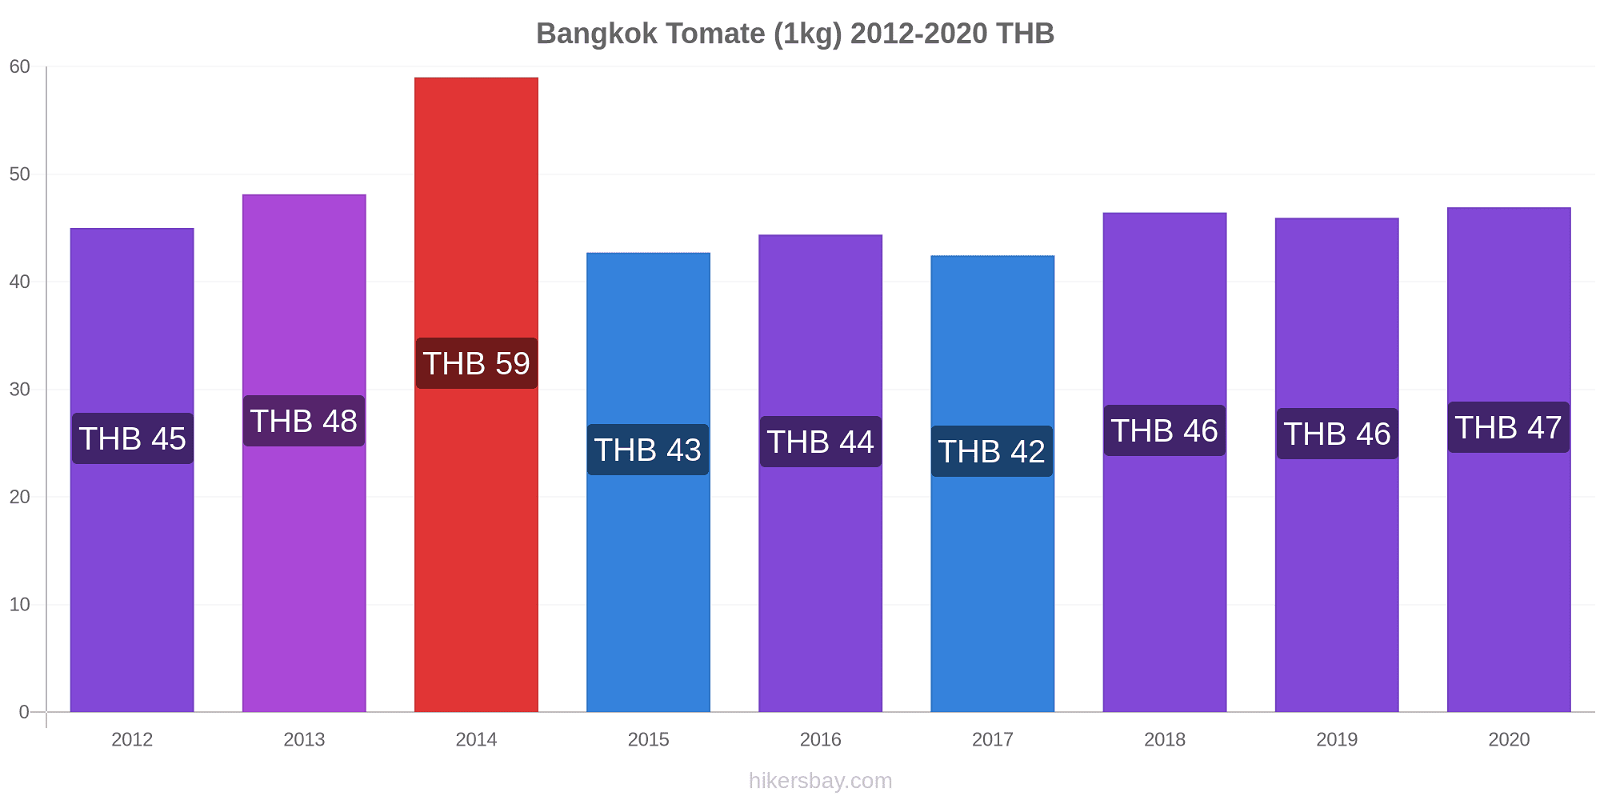 Bangkok changements de prix Tomate (1kg) hikersbay.com